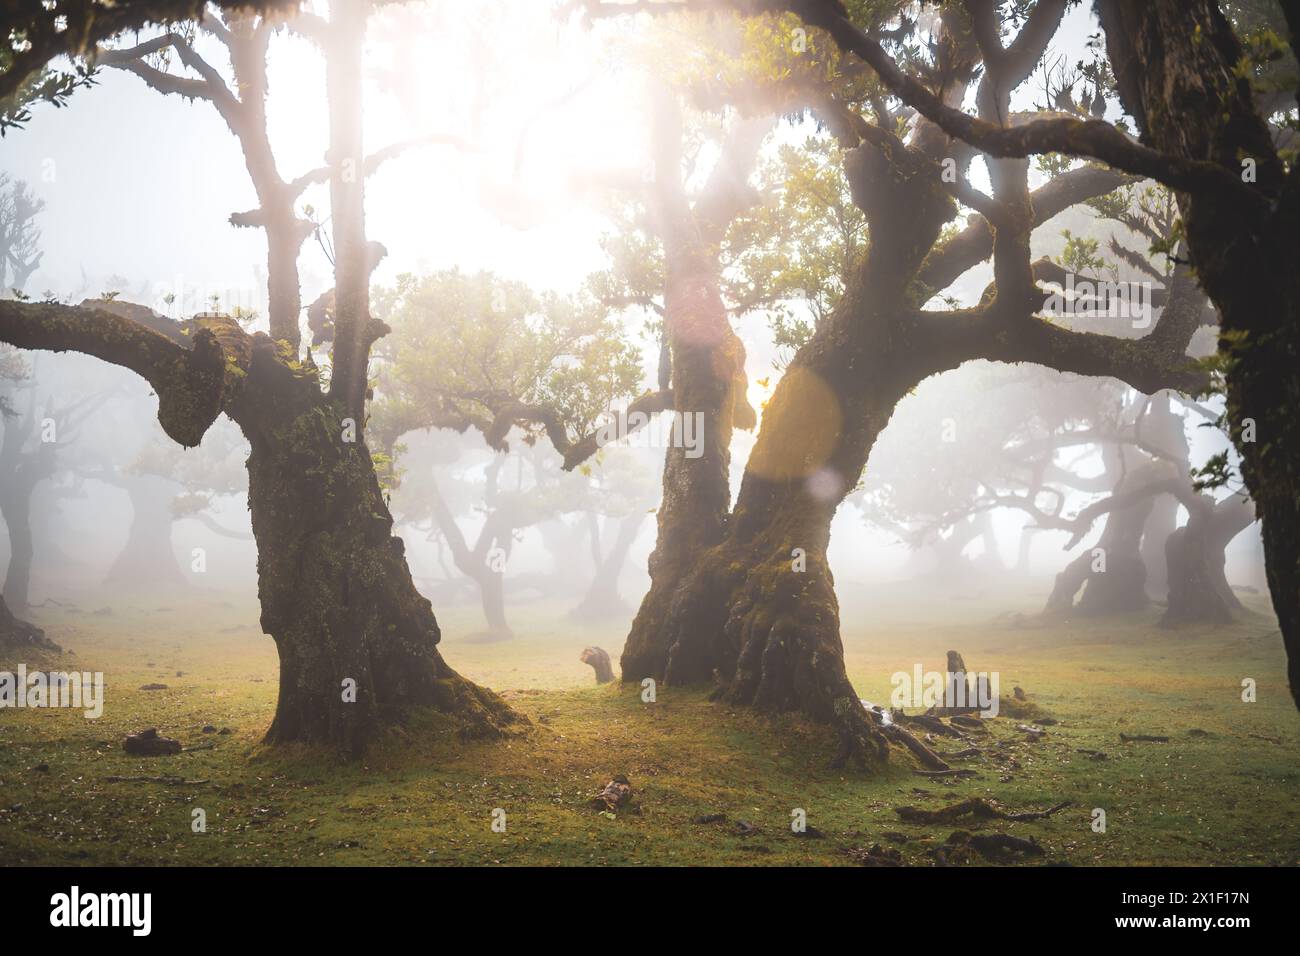 Beschreibung: Sonnenlicht scheint durch einen nebeligen Lorbeerwald mit mystisch aussehenden Bäumen in einer stimmungsvollen und regnerischen Atmosphäre. Fanal-Wald, Insel Madeira, Stockfoto